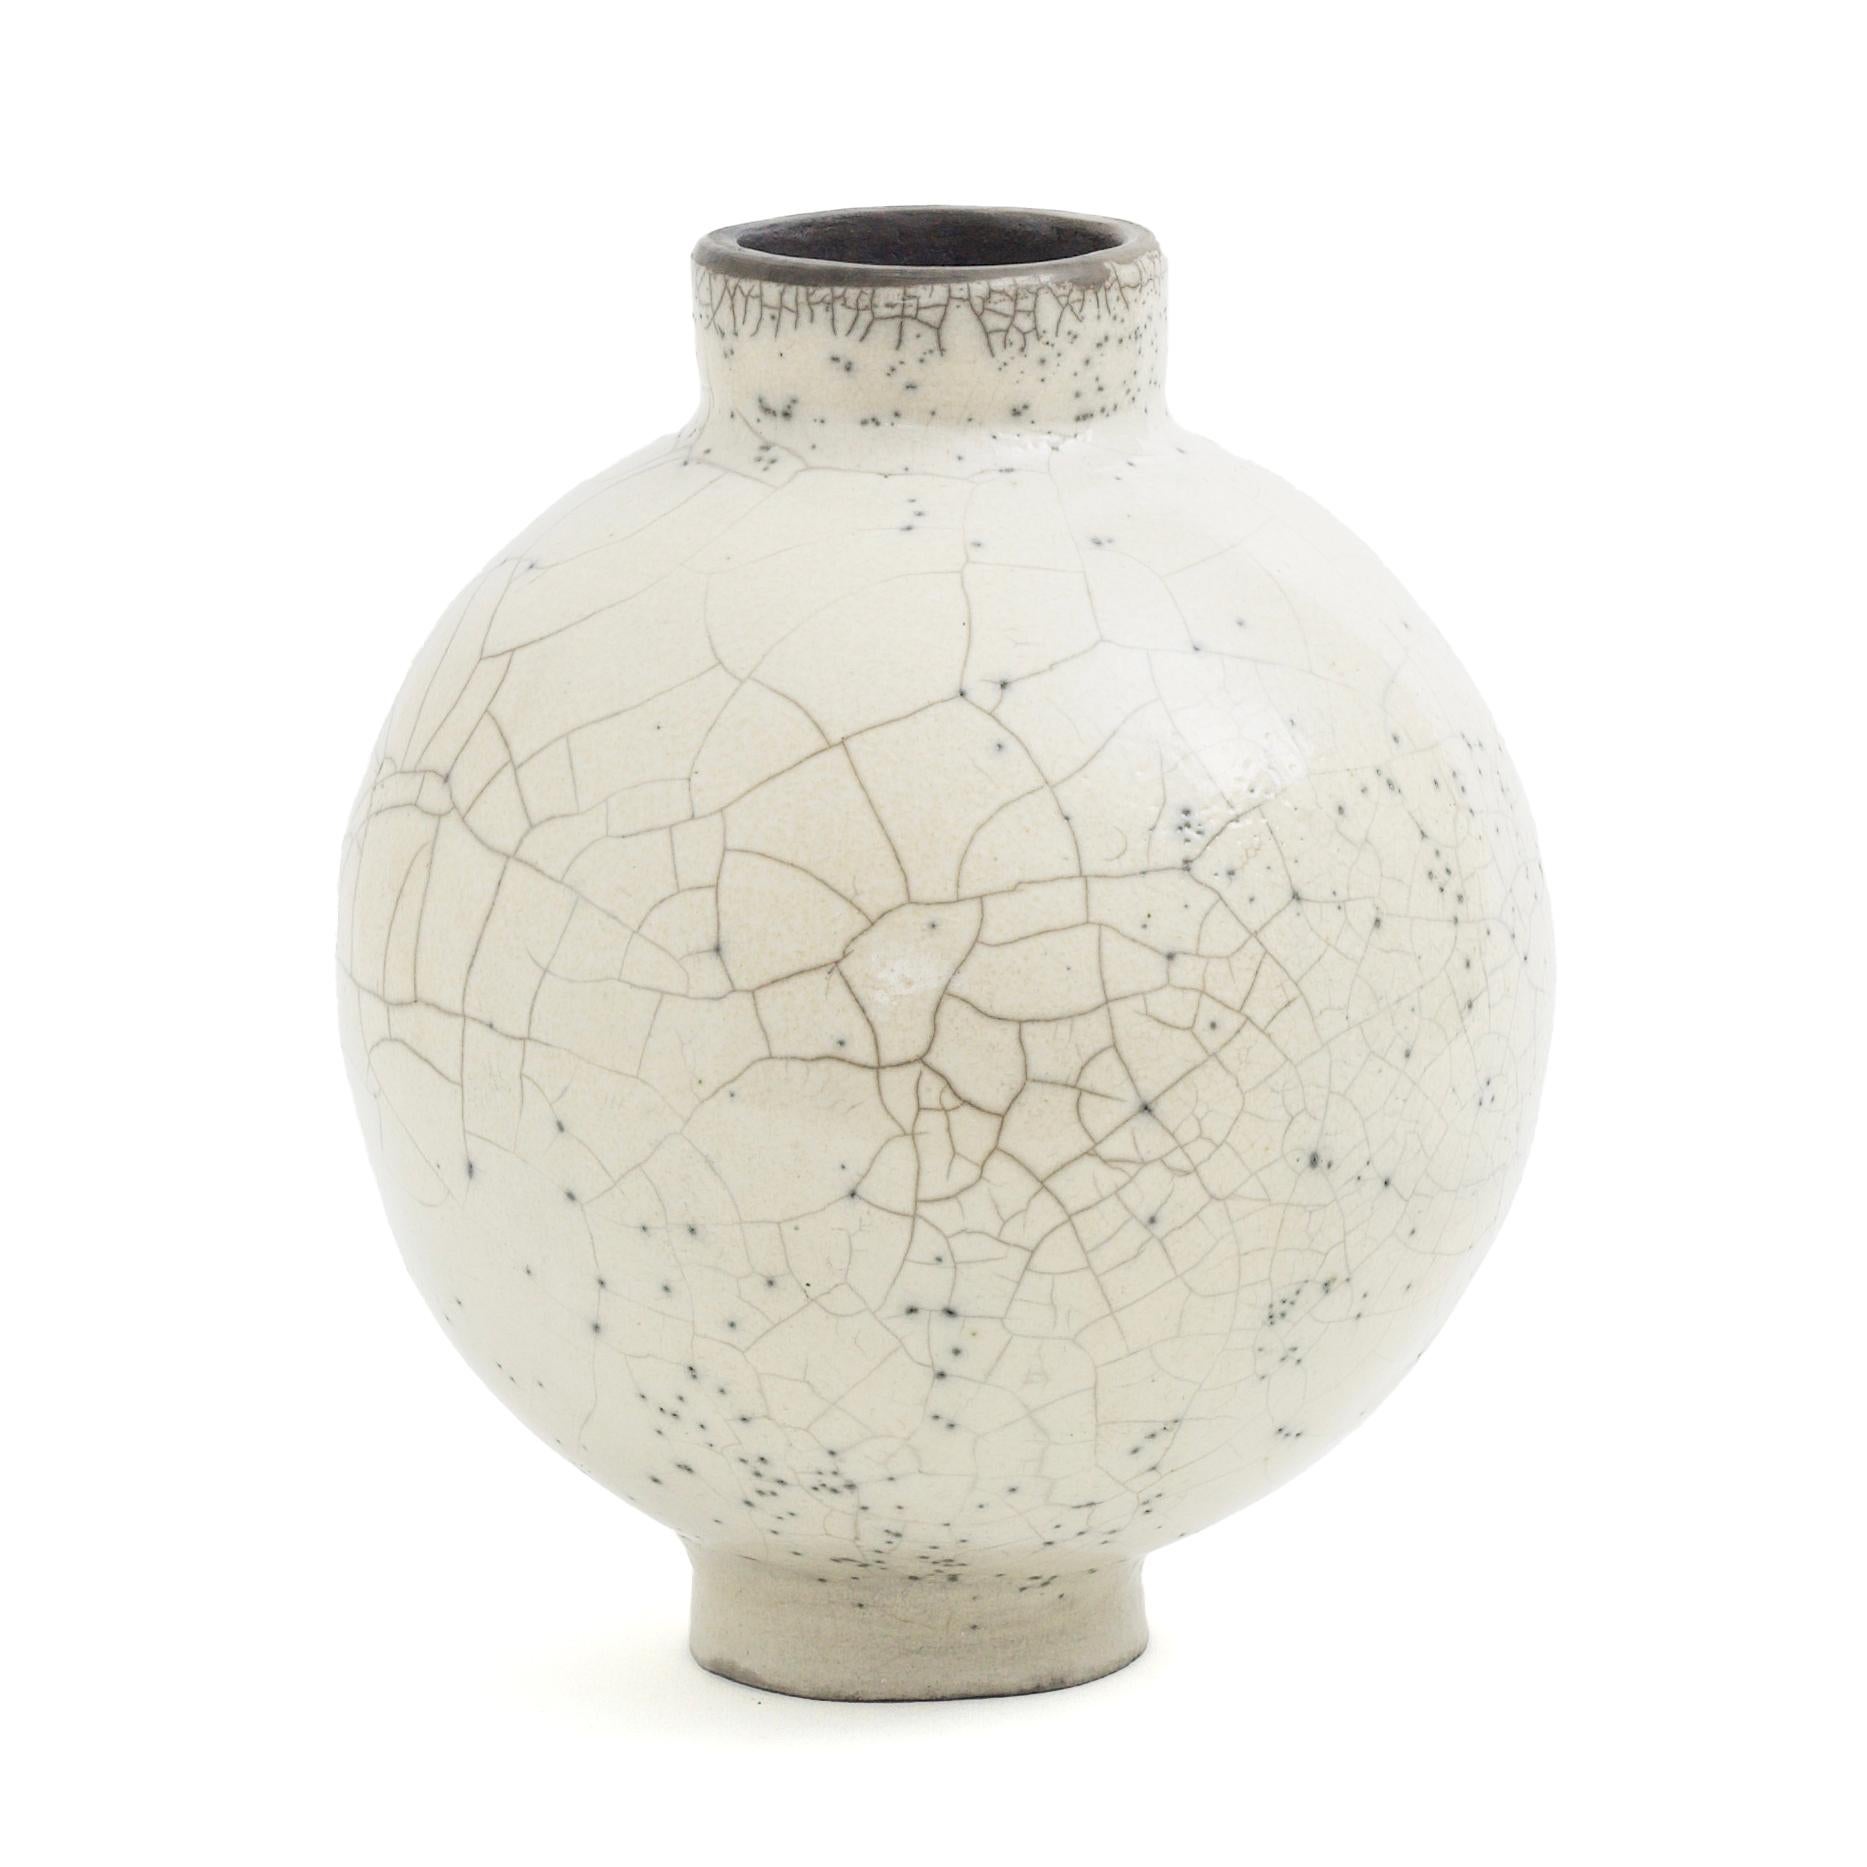 Kuppel-Vase

Einzelne, unvorhersehbare Risse und winzige Sprenkel zeichnen die fesselnde Ästhetik dieser Vase aus, deren zylindrischer Boden und Mund in den kugelförmigen Körper integriert sind. Jedes Stück ist ein einzigartiges Kunstwerk, das